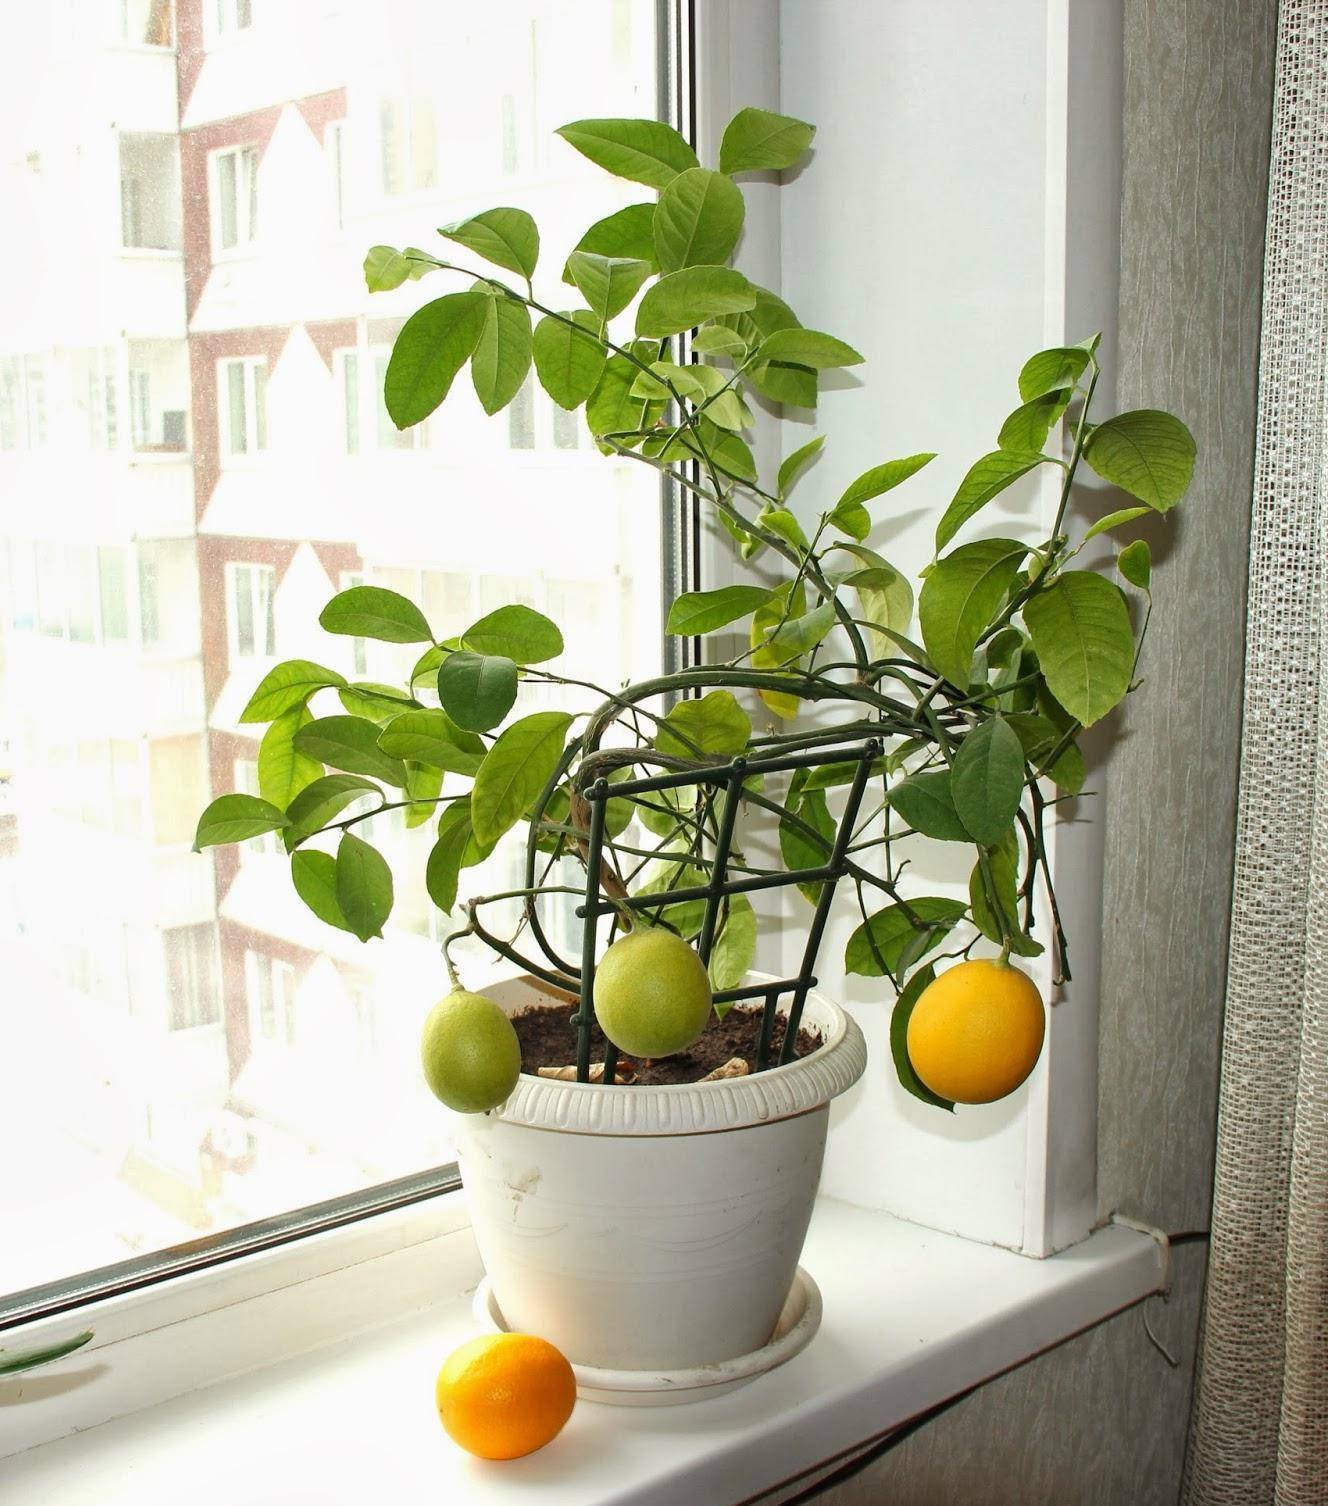 Учимся выращивать и ухаживать за лимоном дома